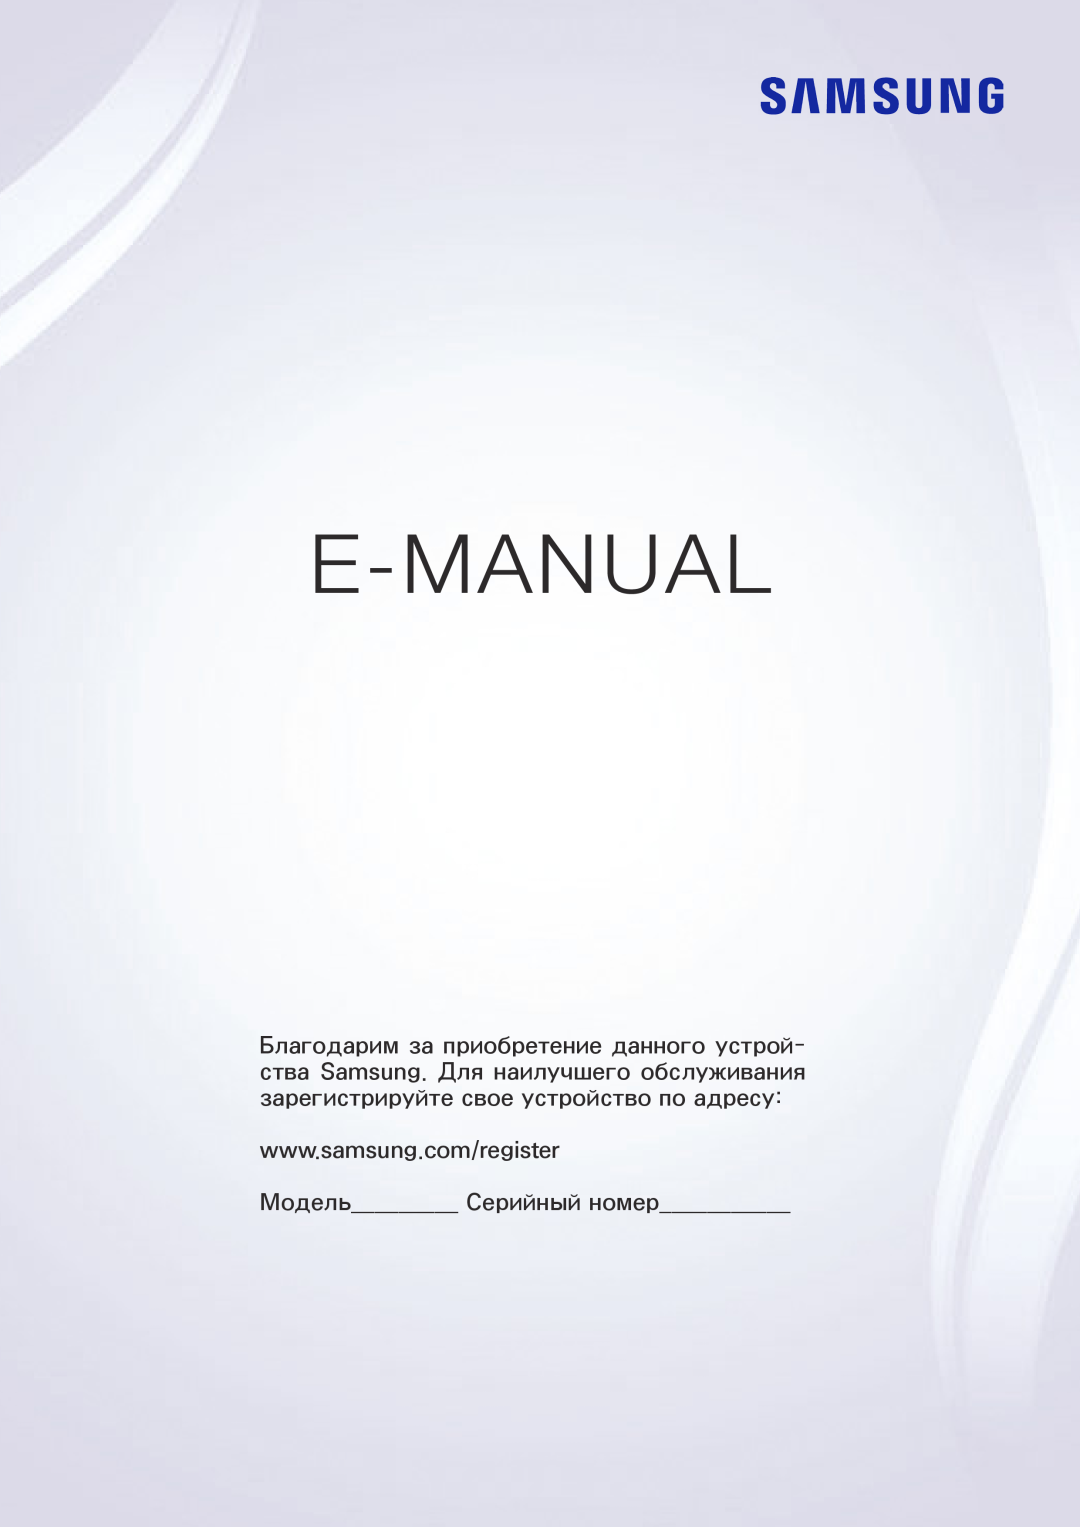 Samsung UE32J4500AWXXH, UE32J4510AWXXH, UE40J5202AKXXH, UE48J5202AKXXH, UE49J5202AKXXH manual E-Manual, ירודיס רפסמ םגד 